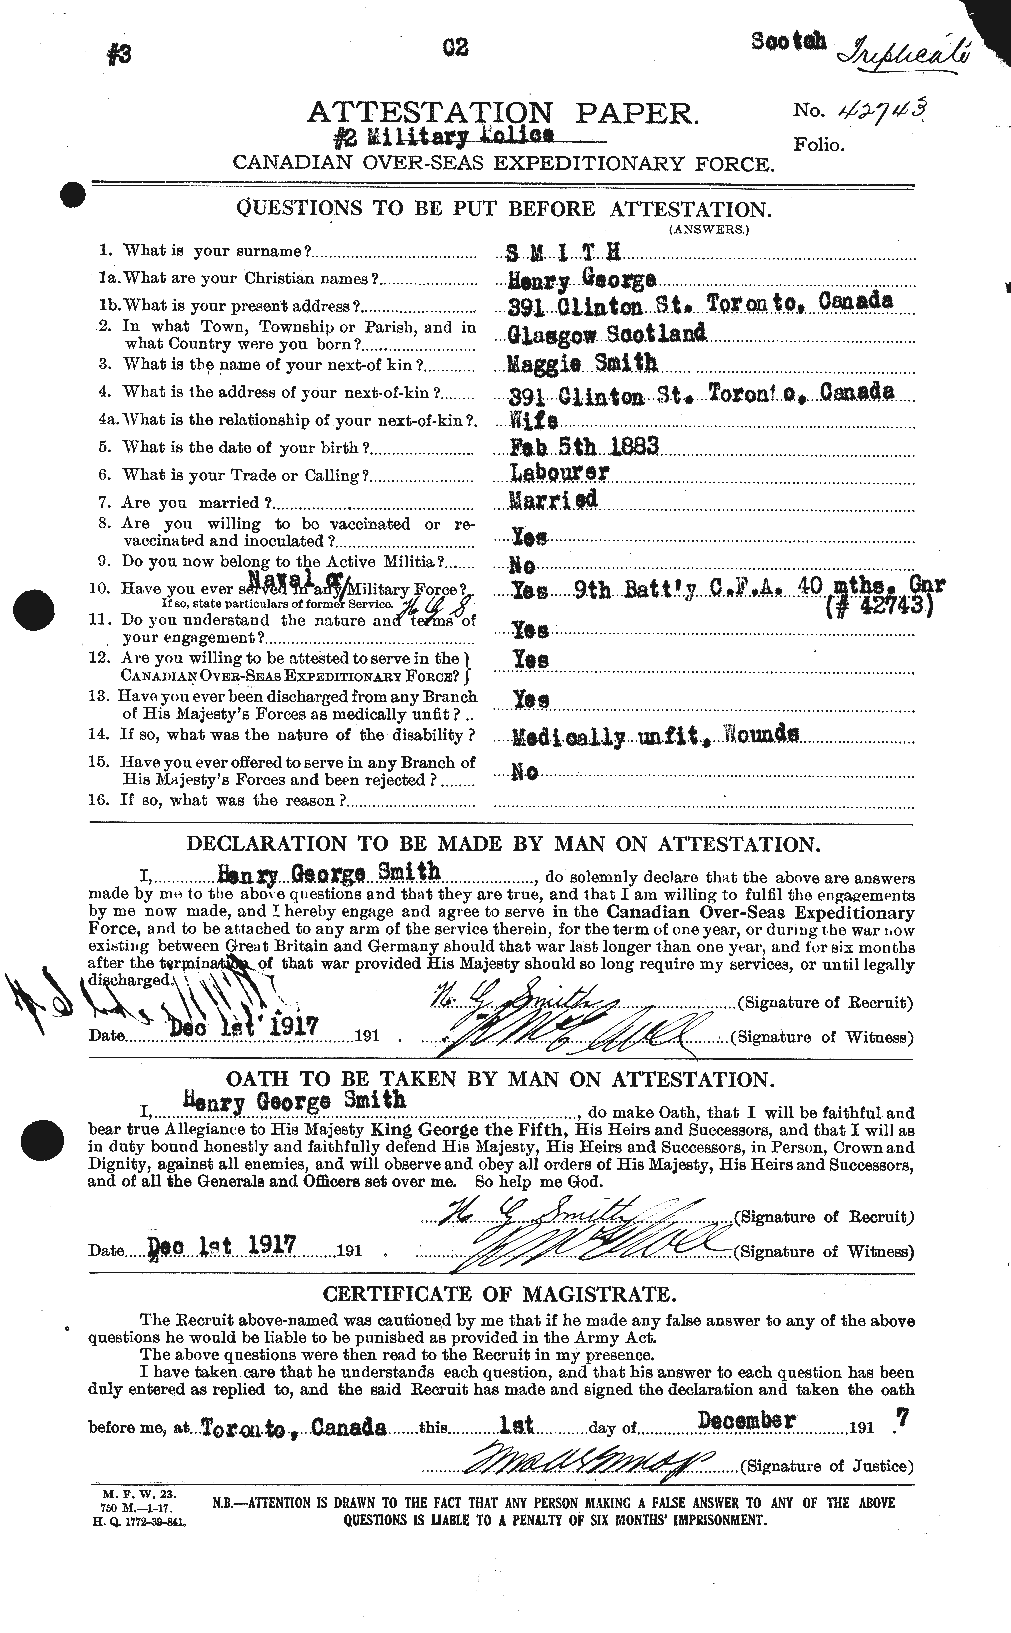 Dossiers du Personnel de la Première Guerre mondiale - CEC 104977a